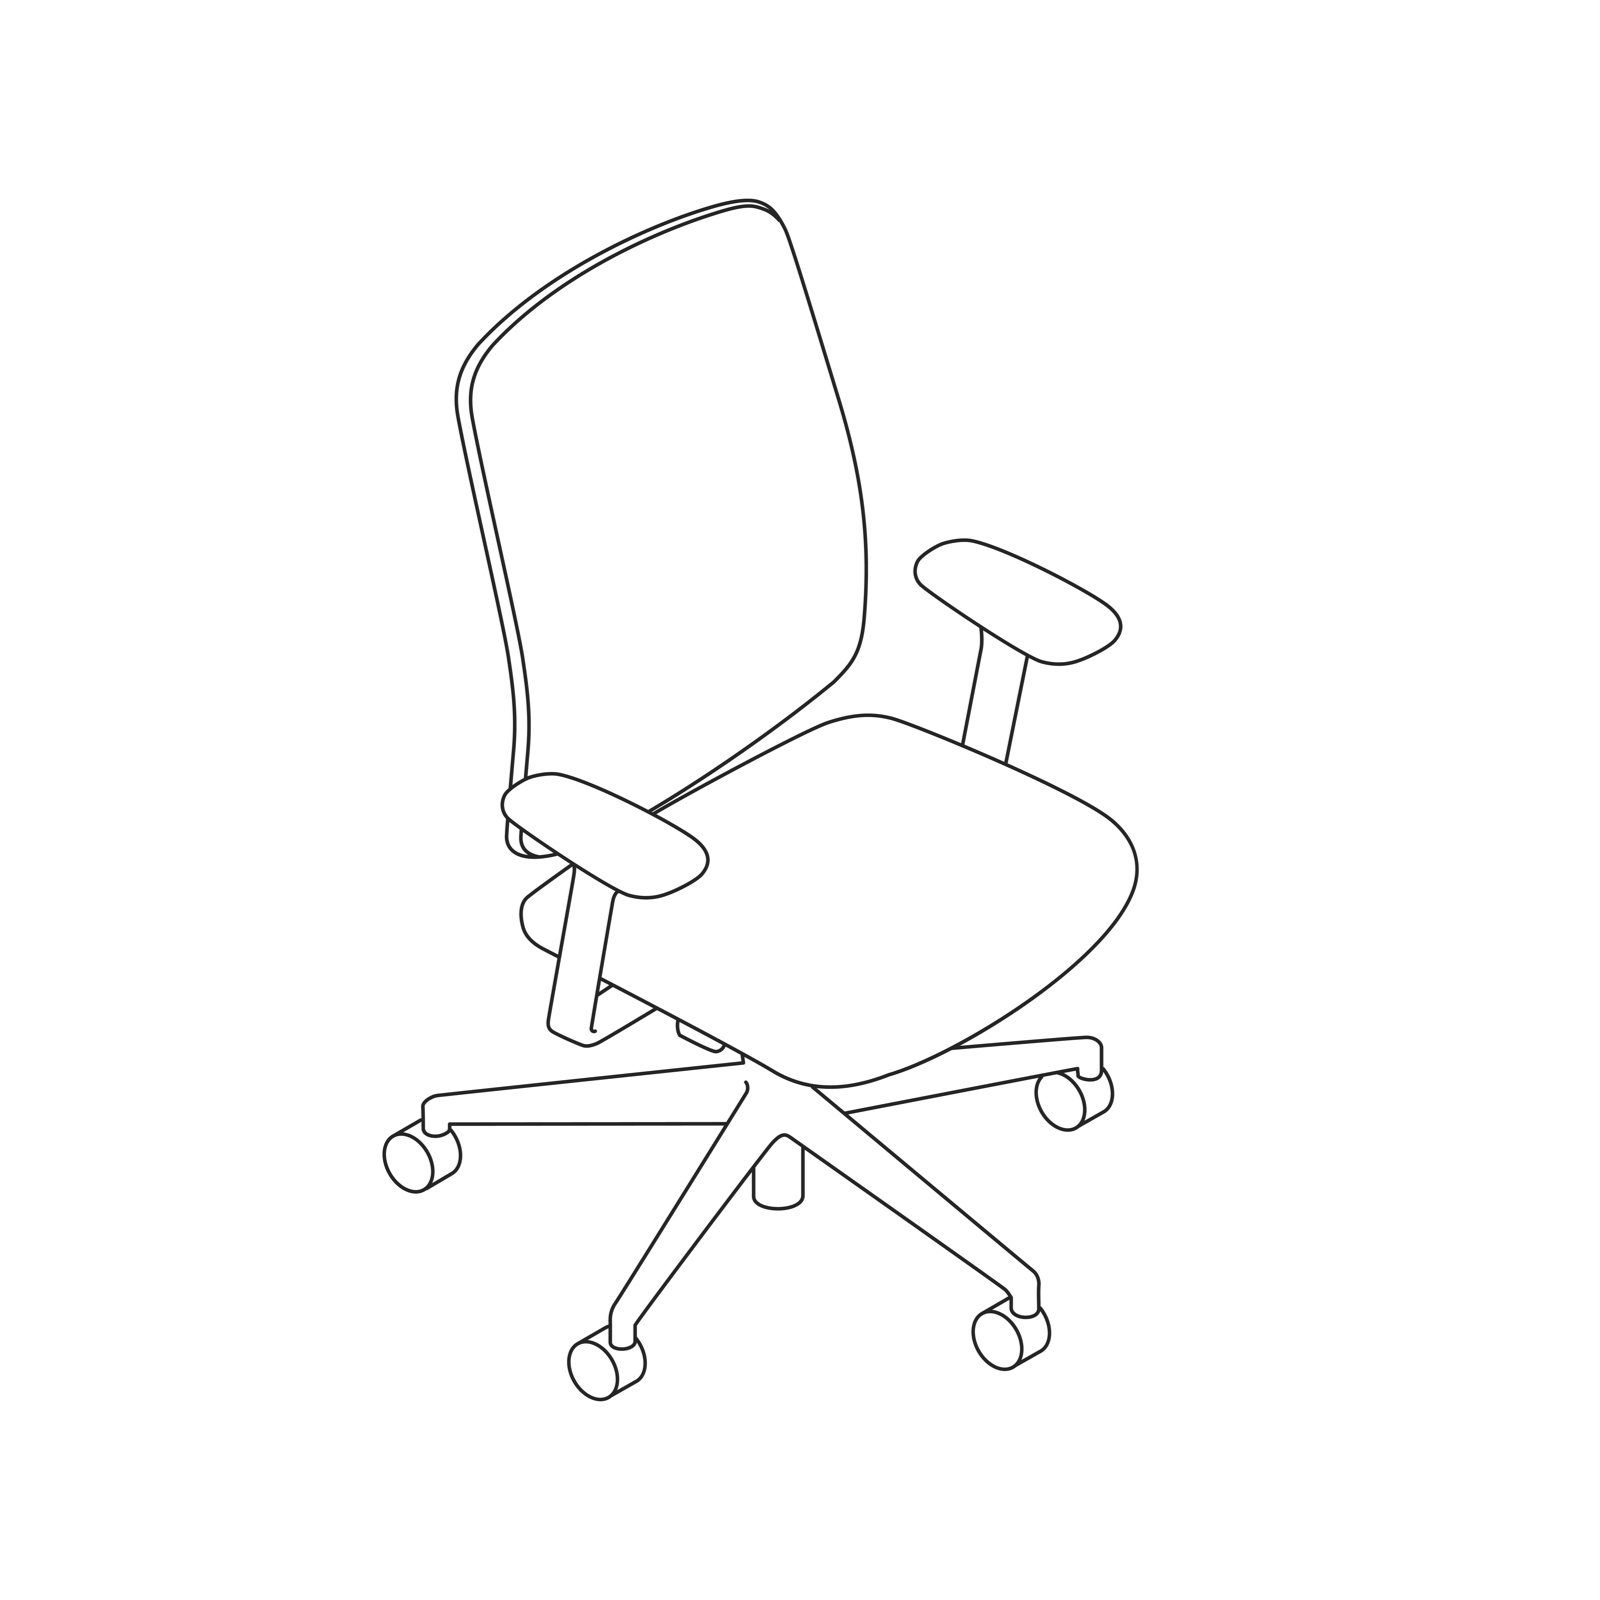 Dibujo de una silla Verus.